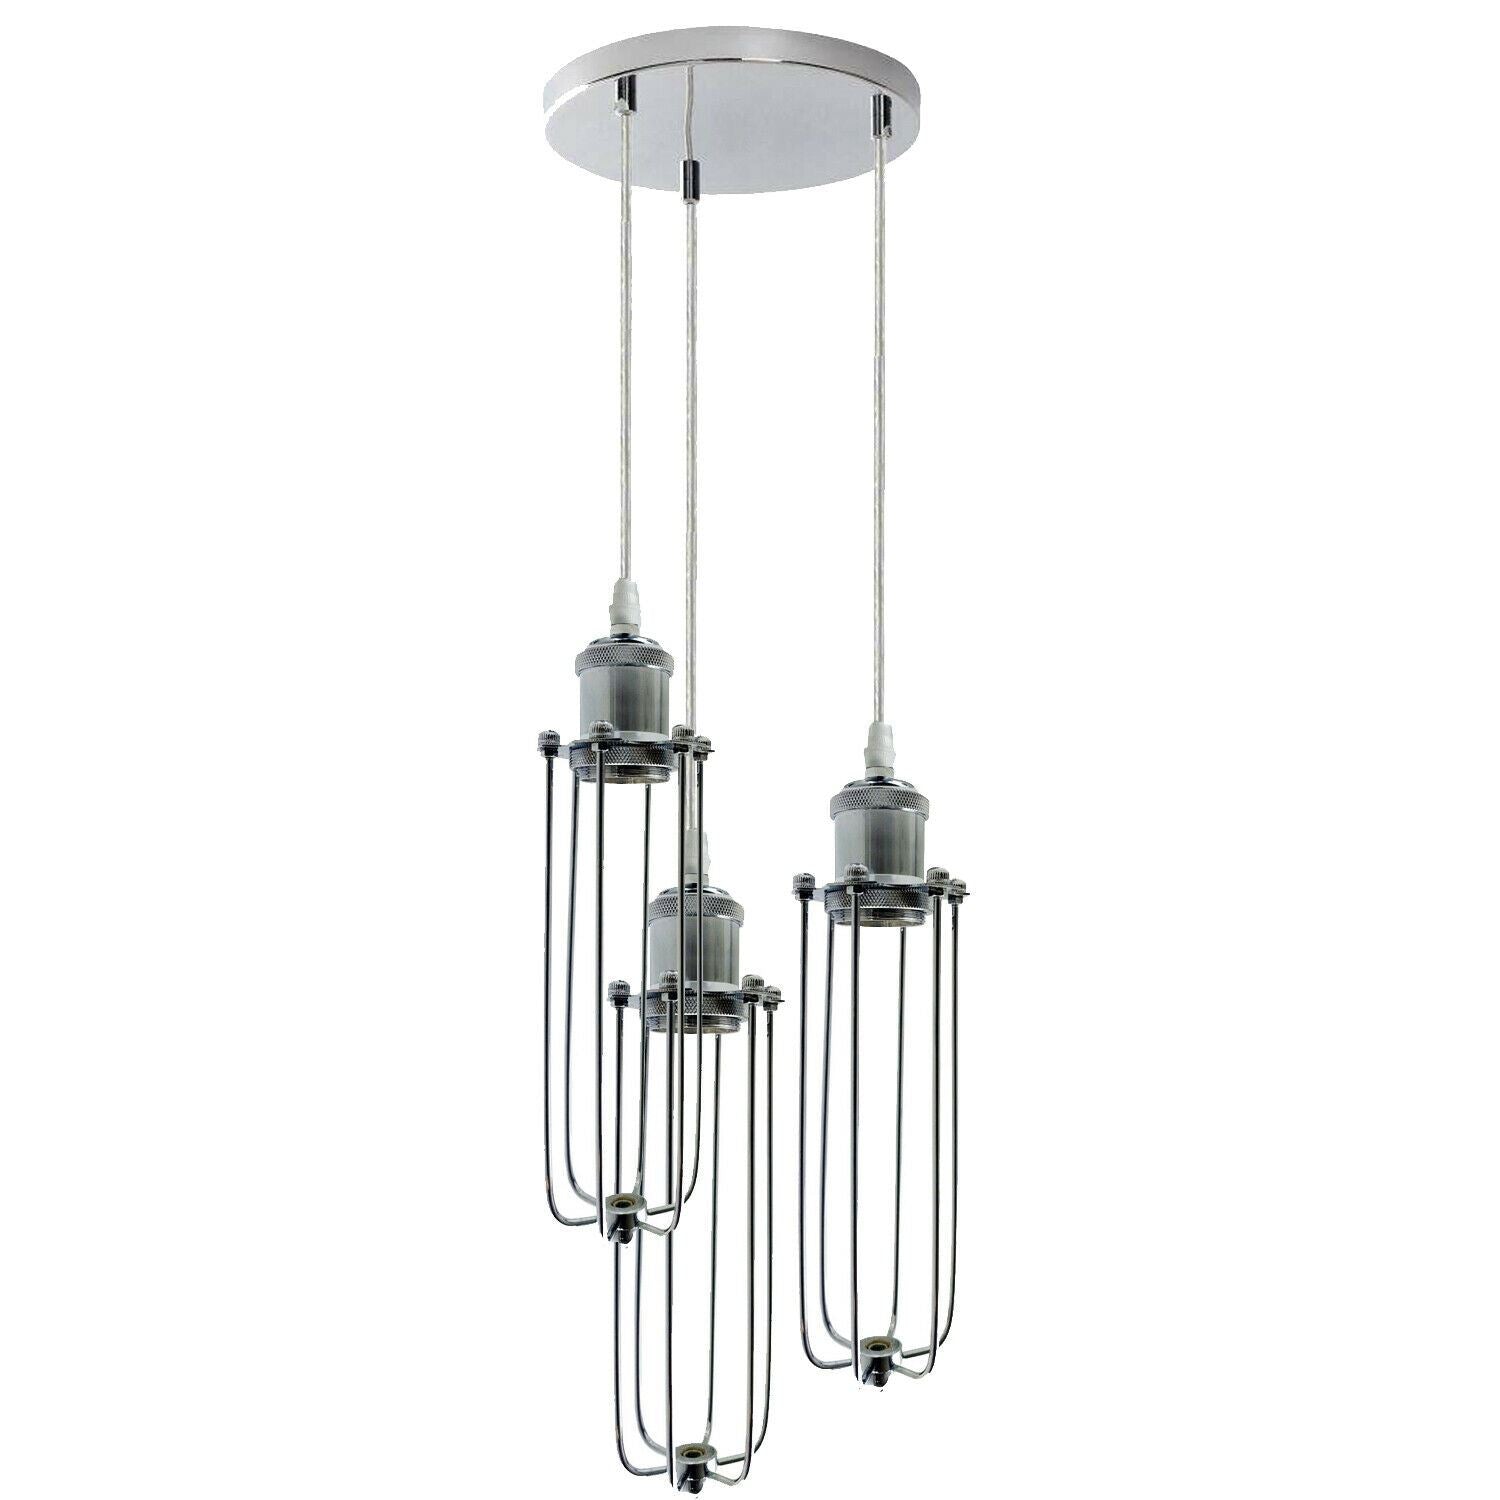 3 Way Cluster Hanging Ceiling Pendant Light E27 Chrome Light Fitting Lamp Kit~1353 - LEDSone UK Ltd